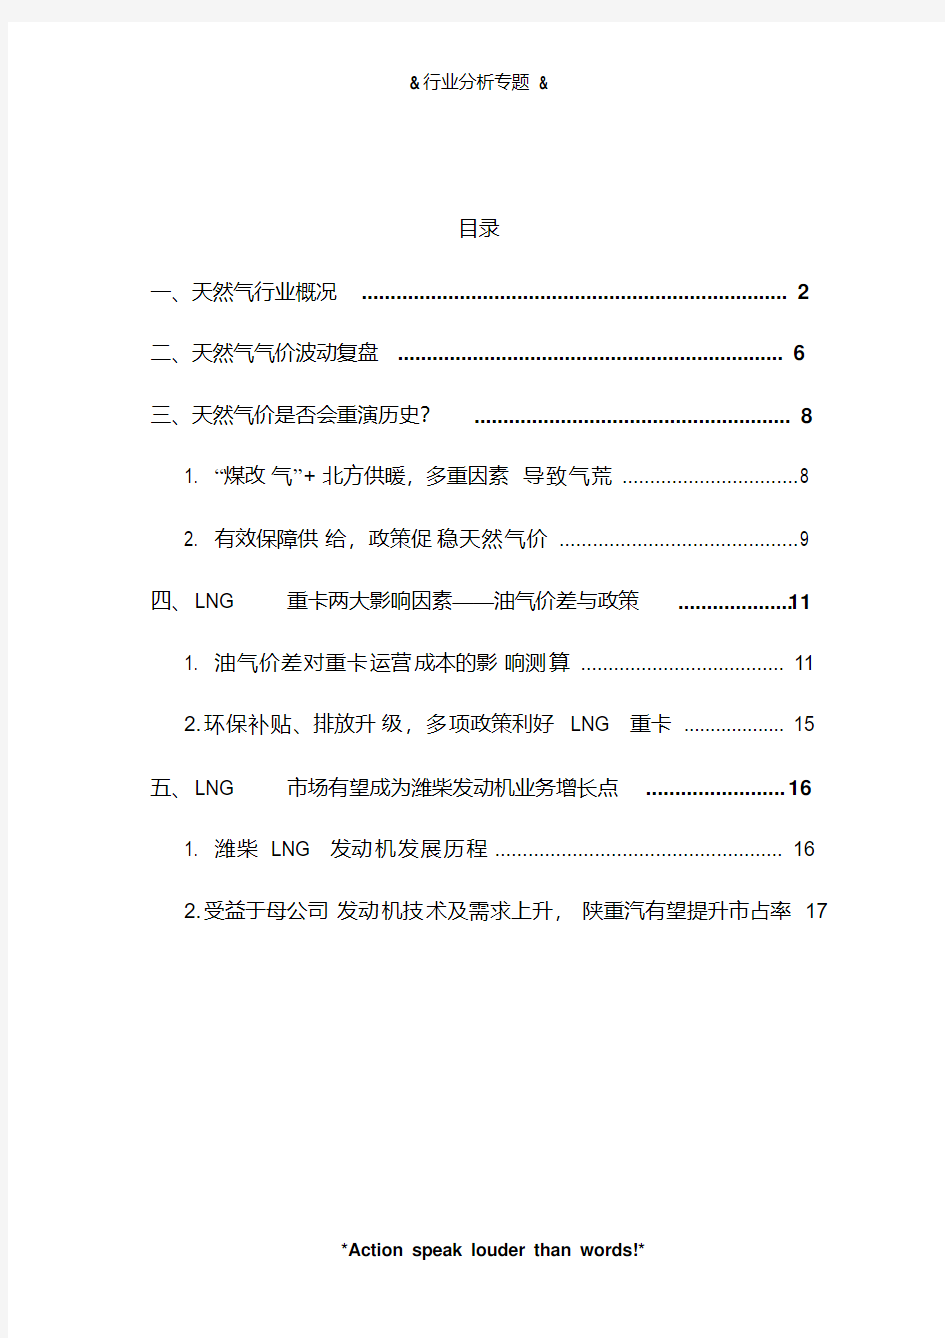 2019年中国LNG重卡汽车行业分析报告(21y)